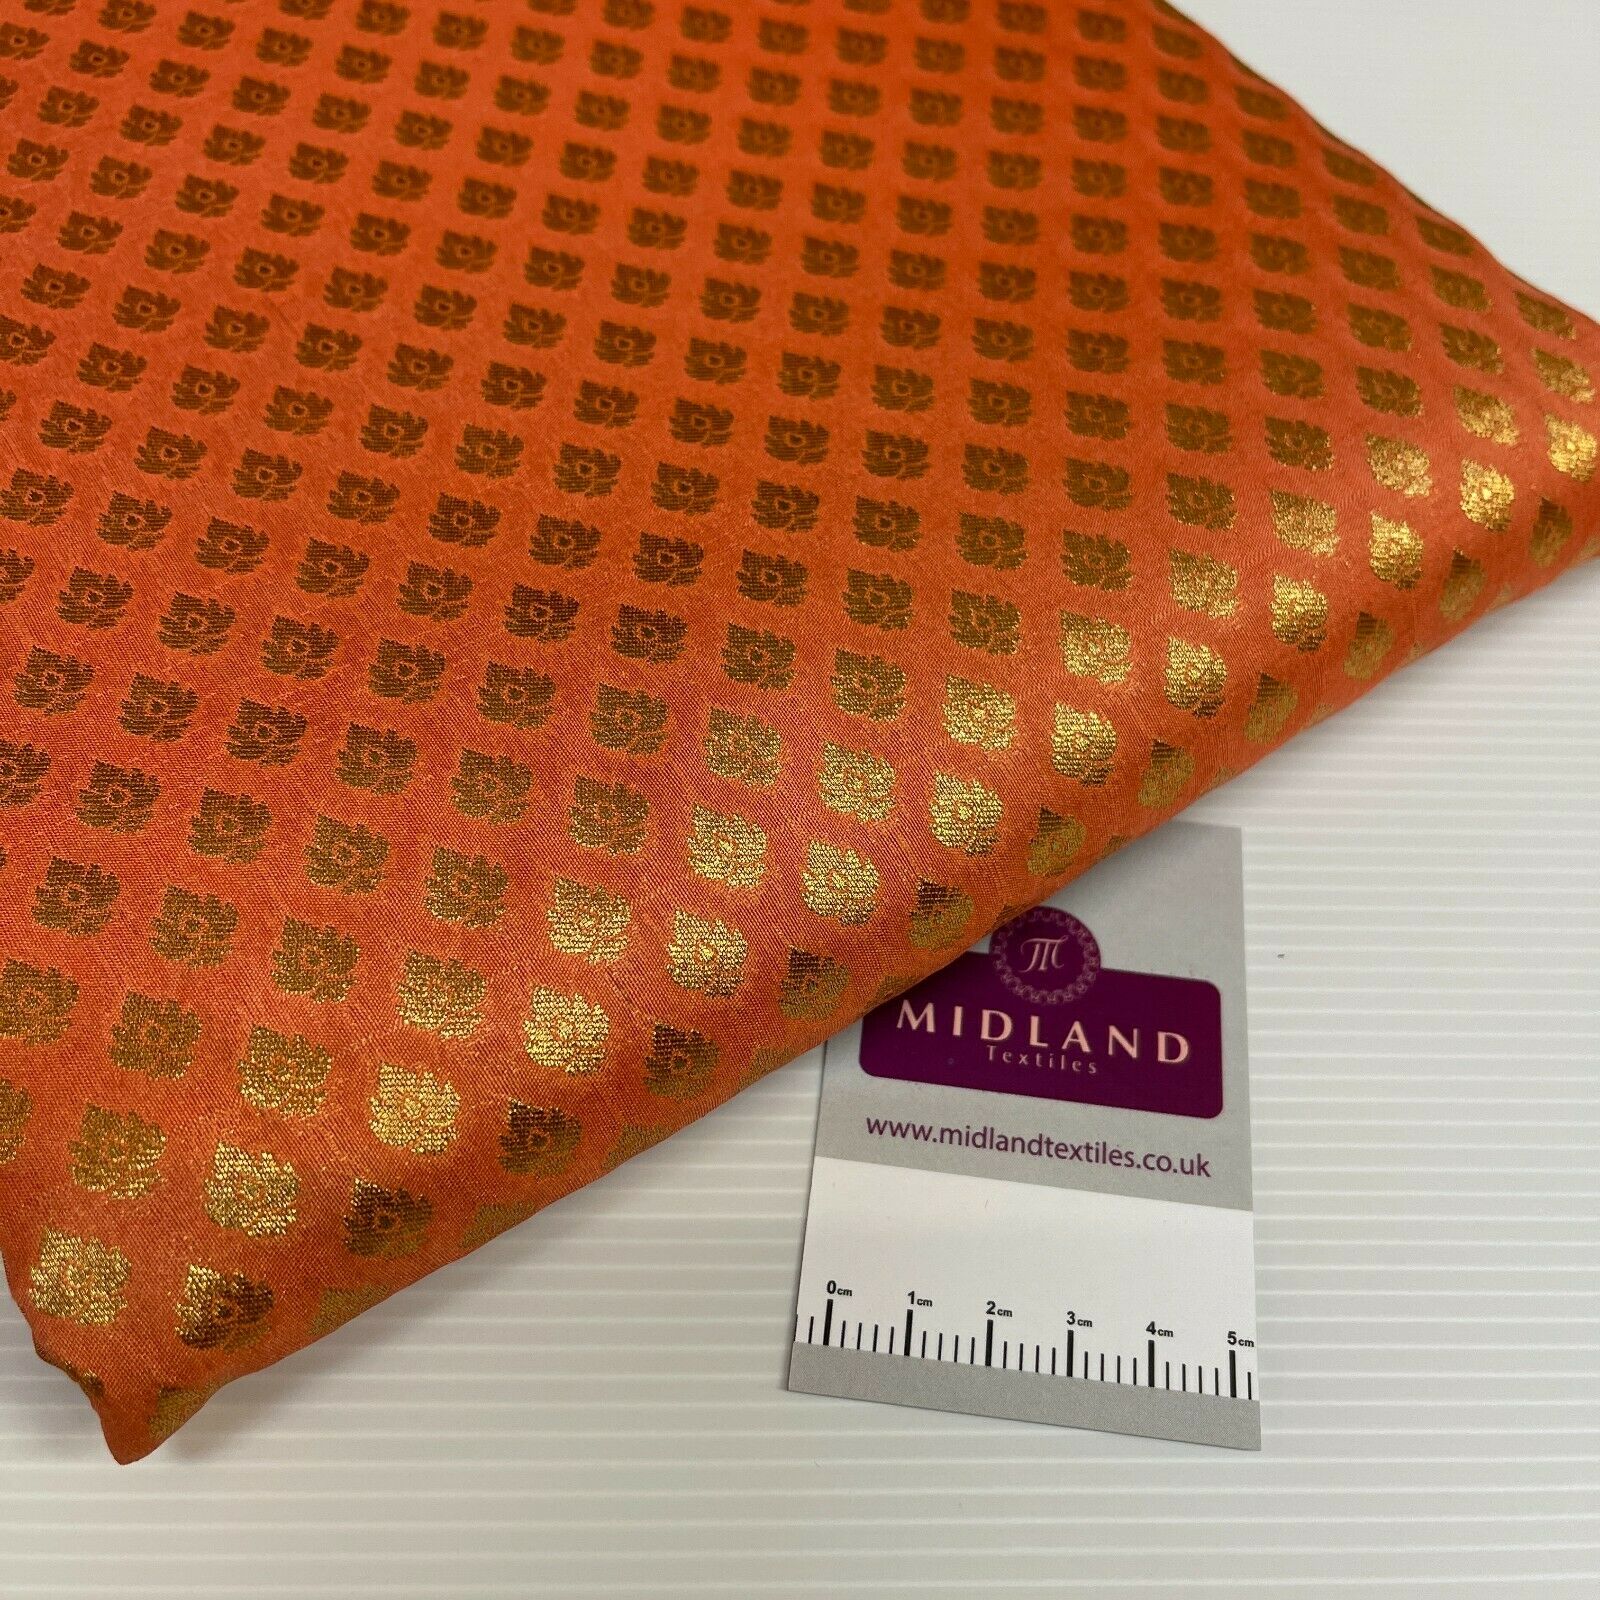 Indian Handloom brocade wedding fabric M1536 Mtex